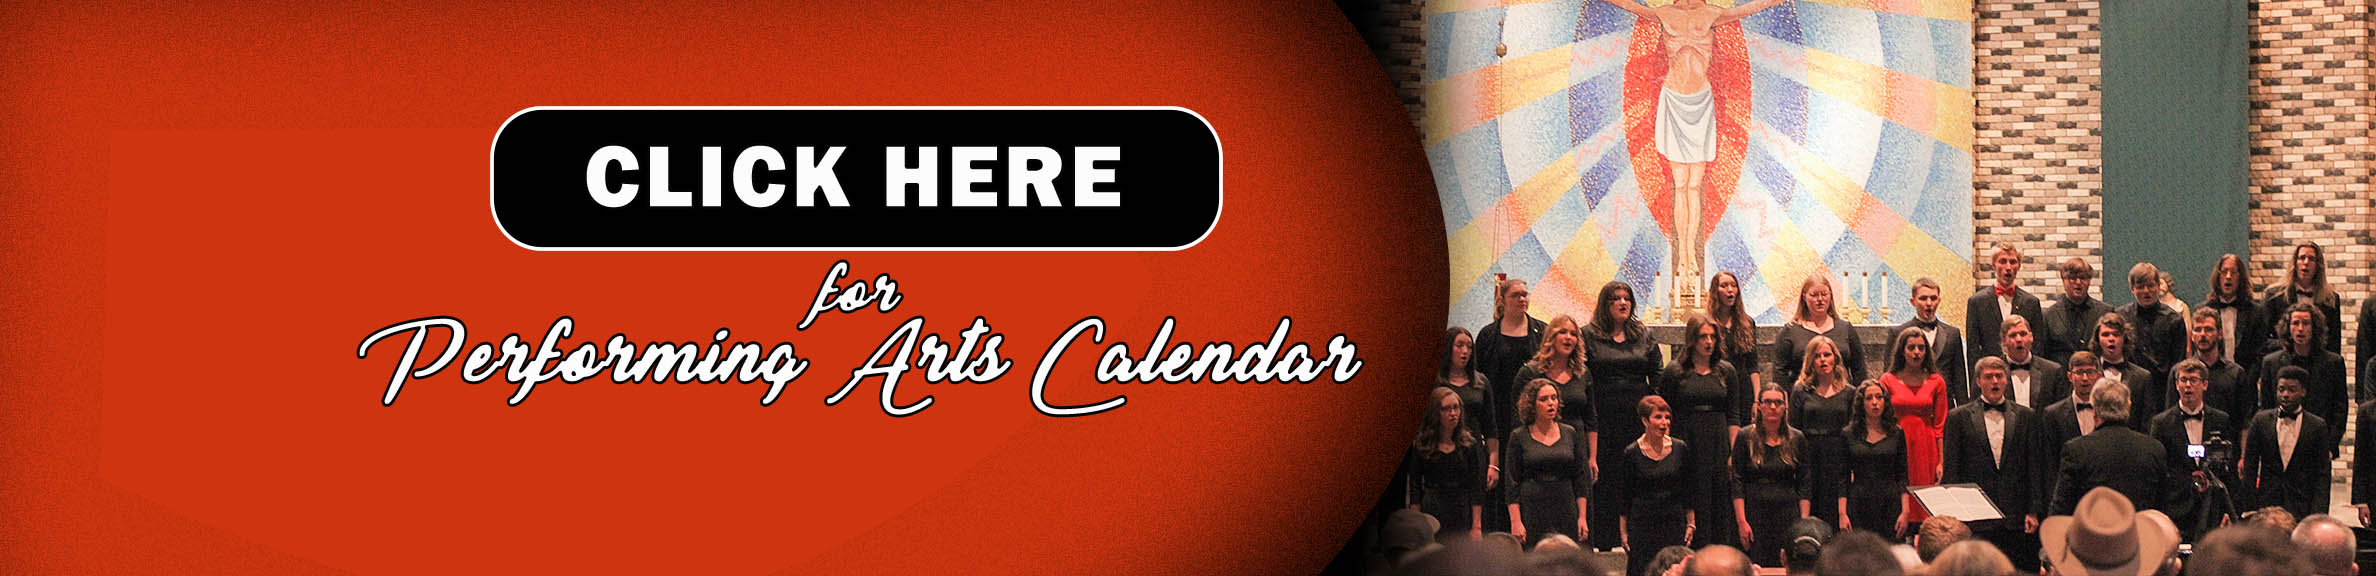 Performing Arts Calendar